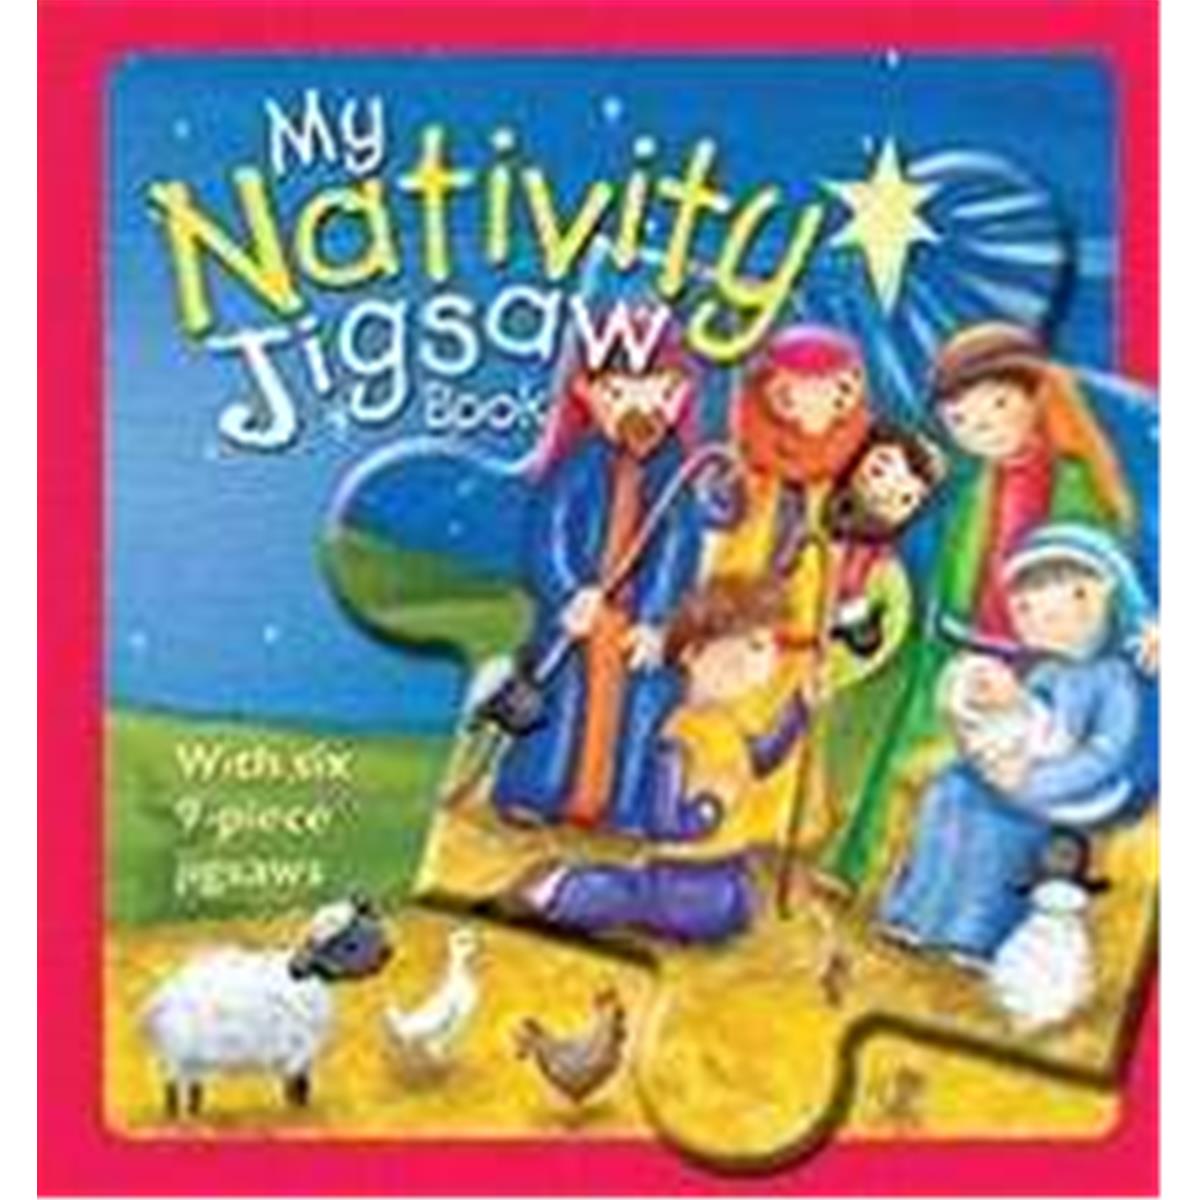 228888 Christmas Jigsaw Book By Goodings Christina